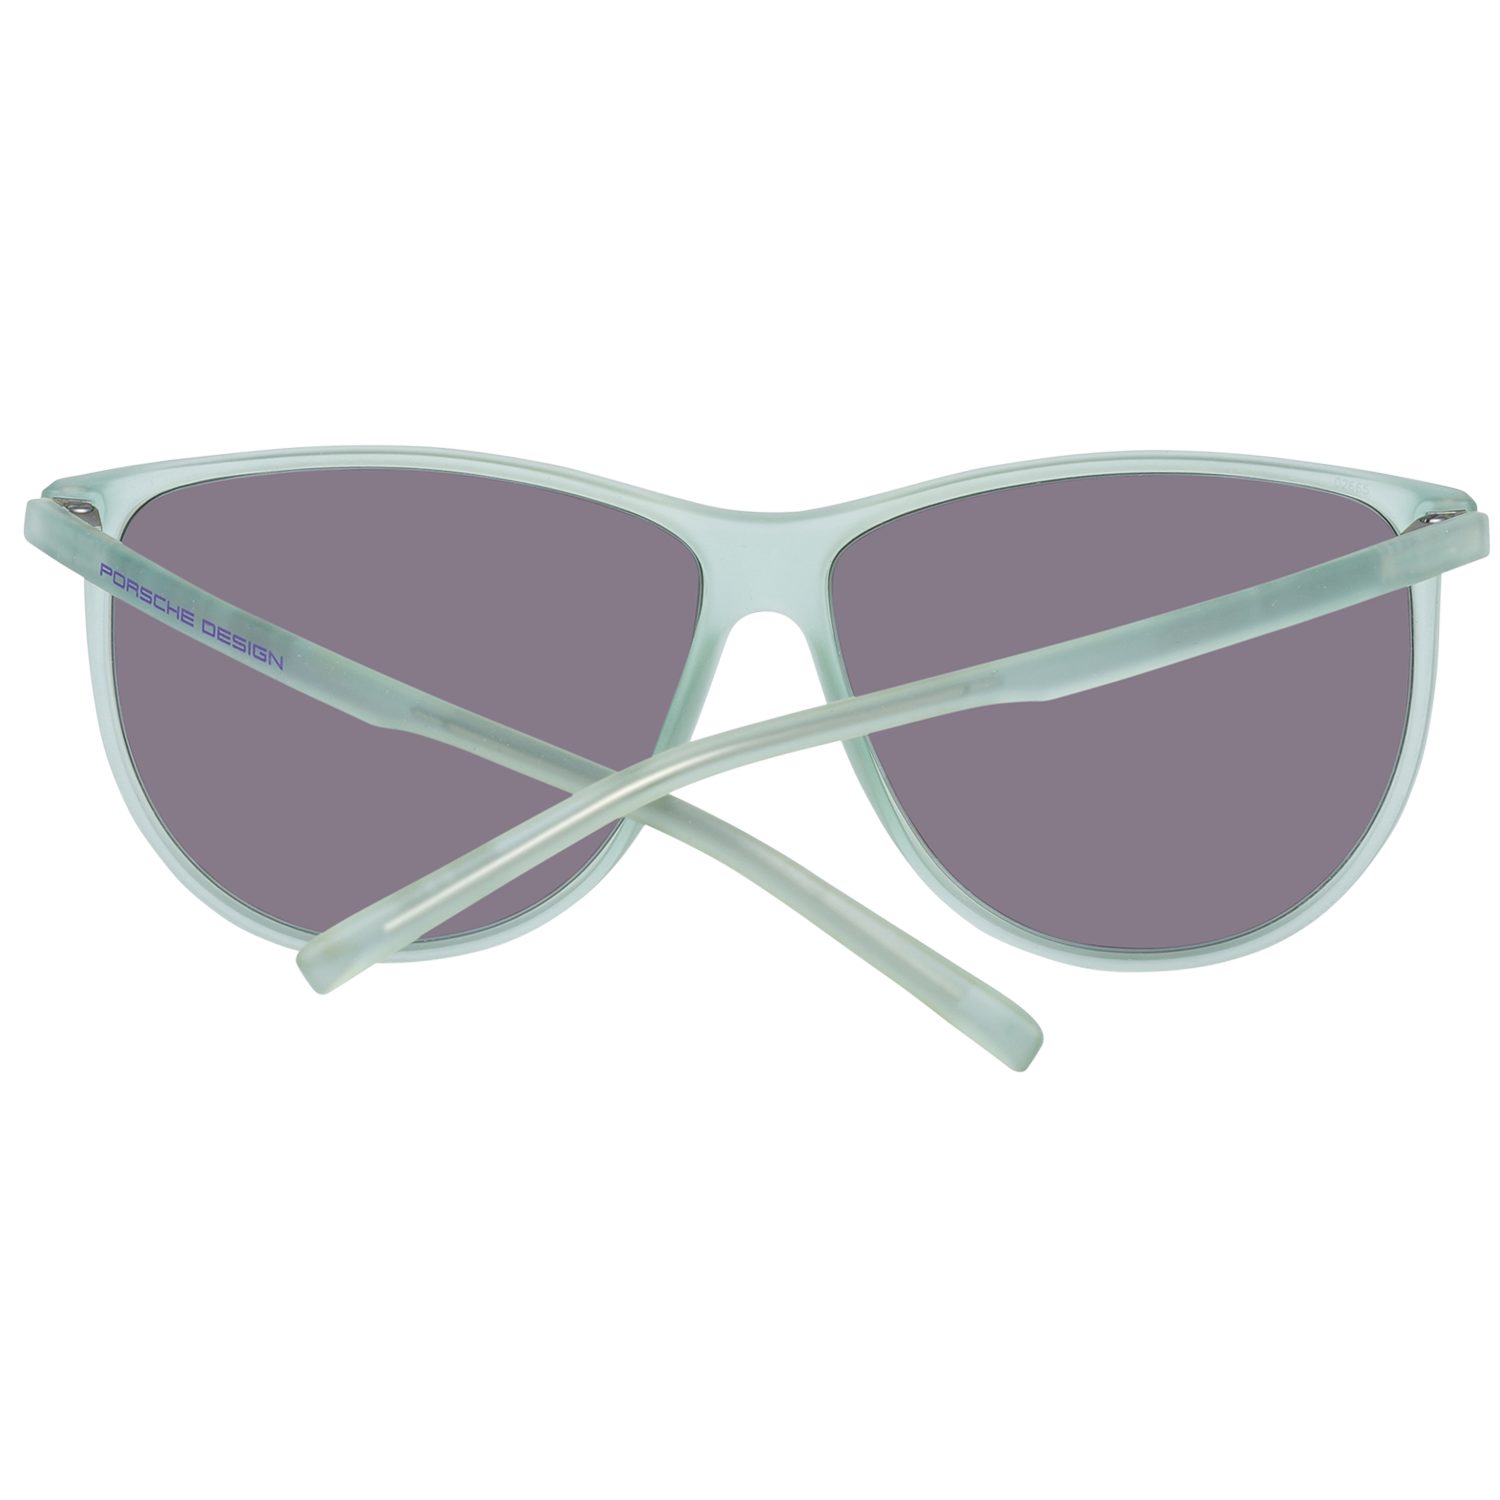 Sonnenbrille PORSCHE Design